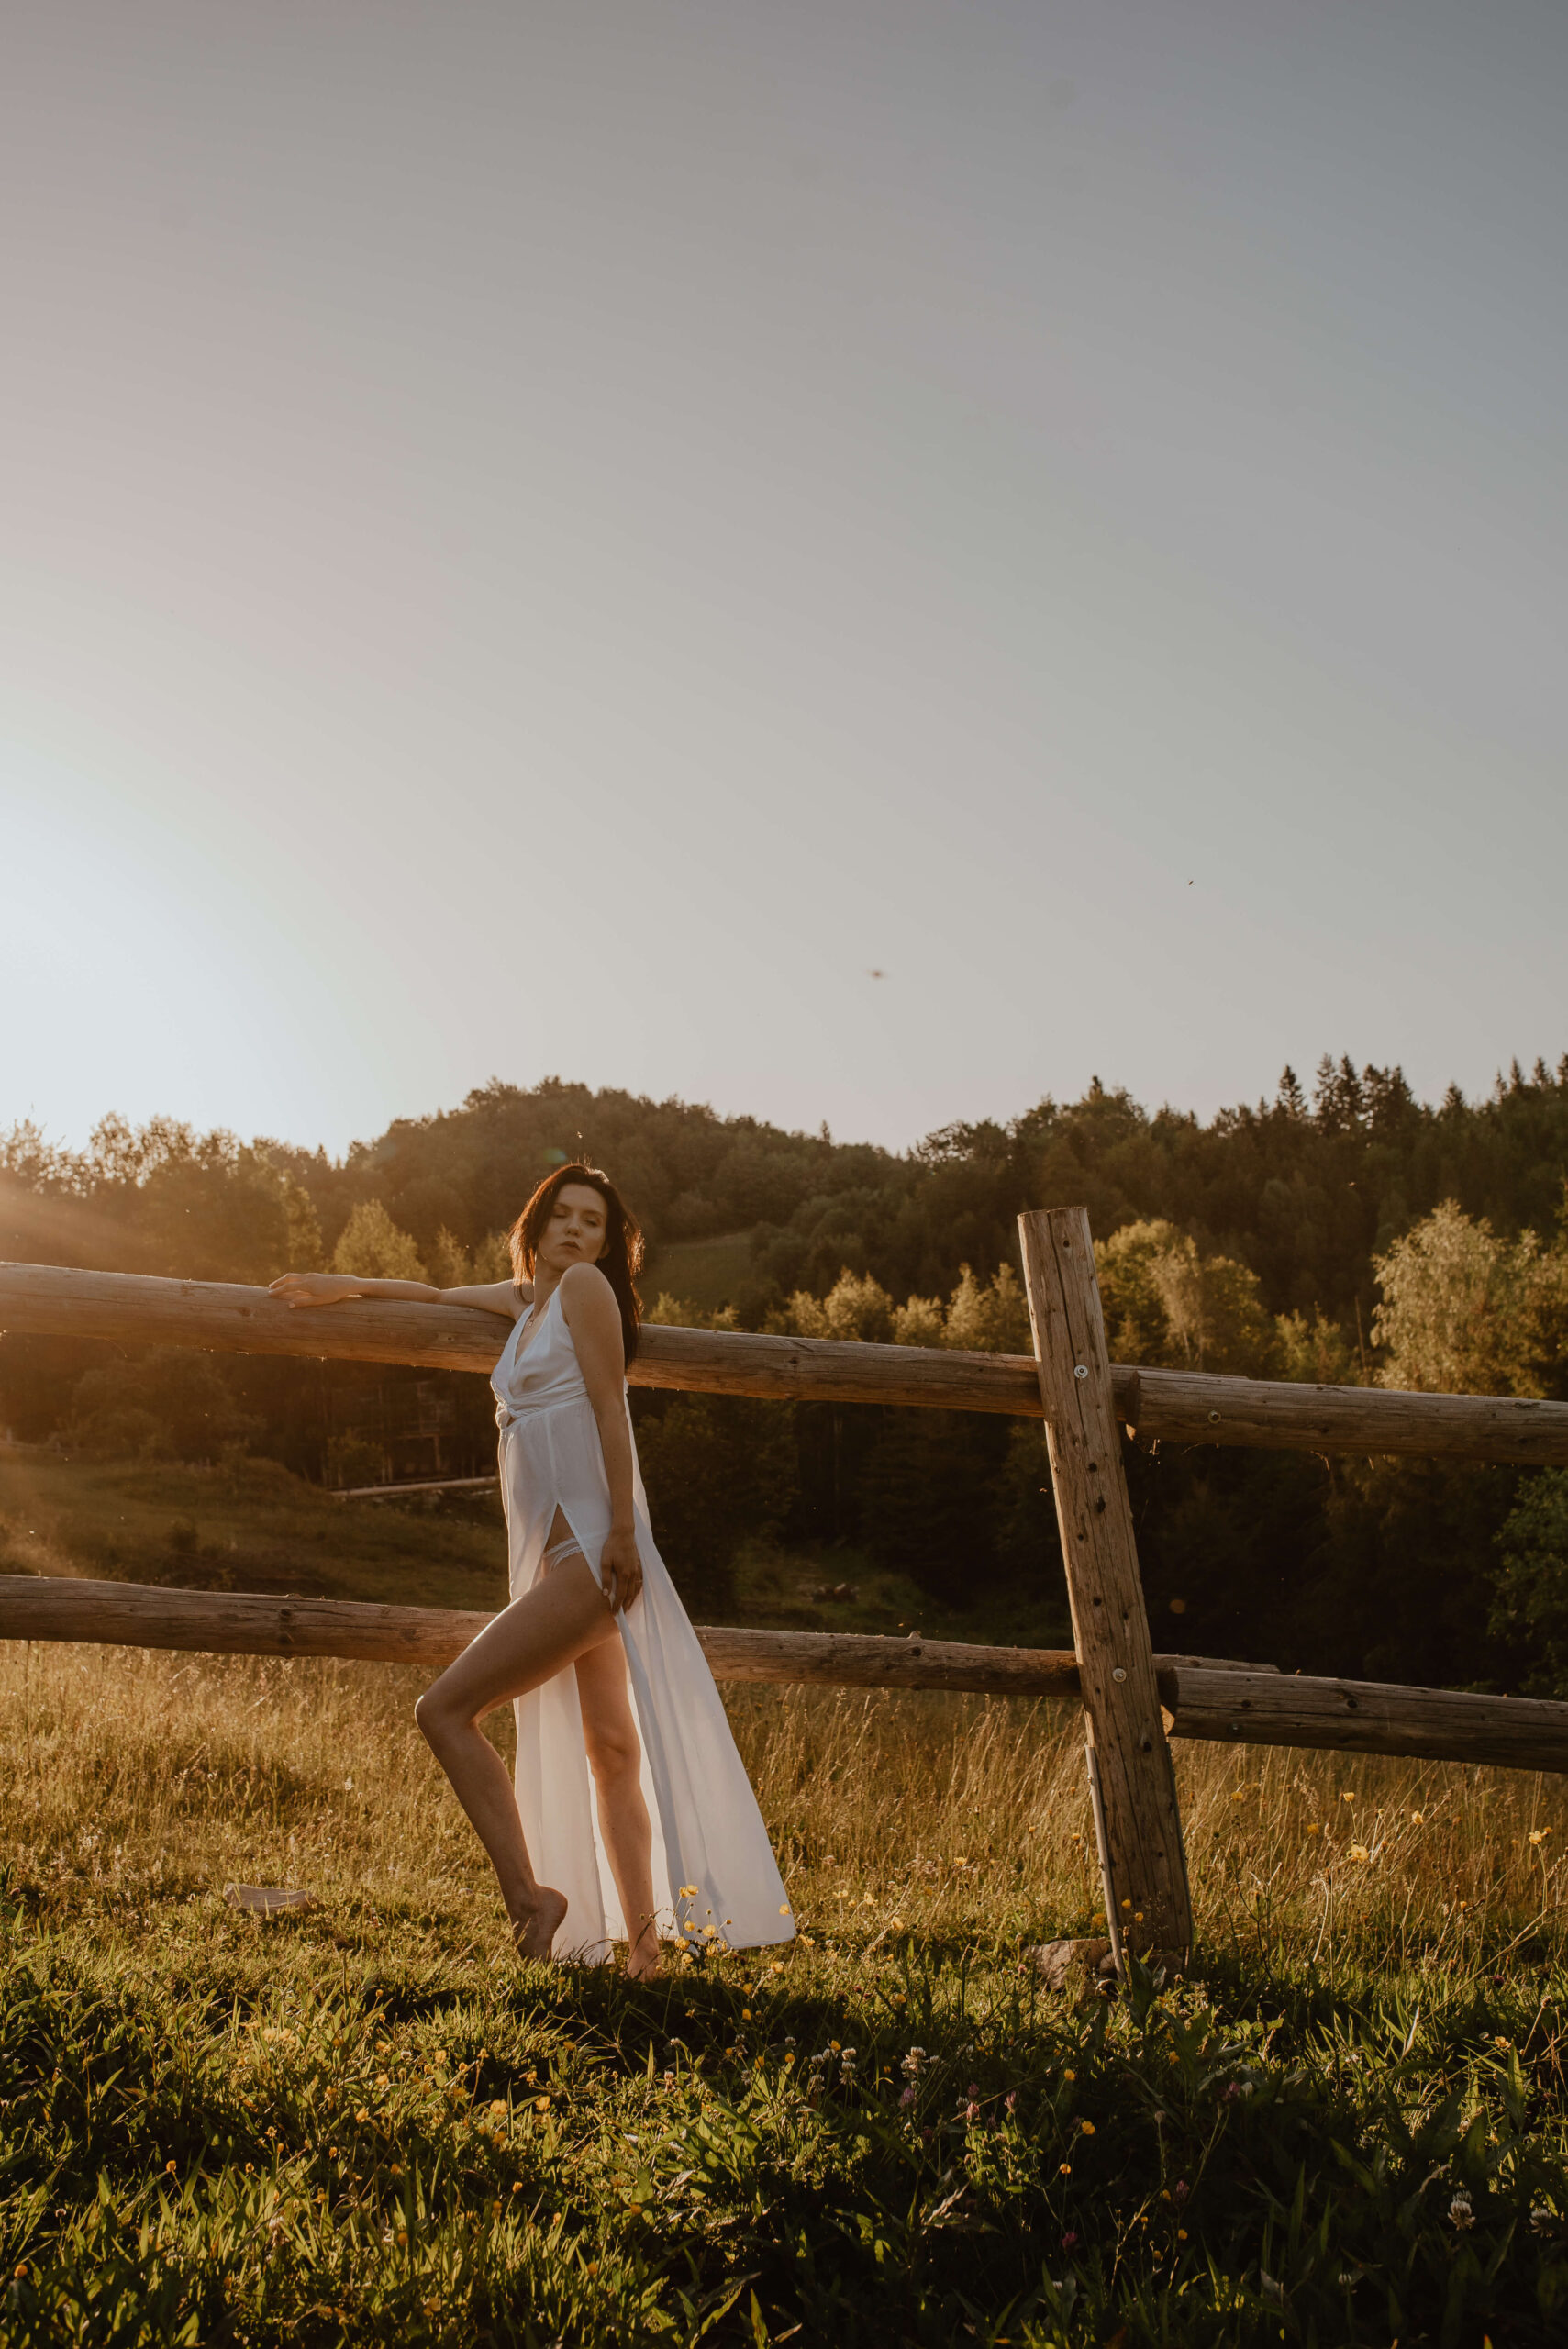 Die Braut in ihrem einfachen, luftigen Kleid steht vor einer hölzernen Pferdekoppel und genießt den Sonnenaufgang inmitten der unberührten Natur.